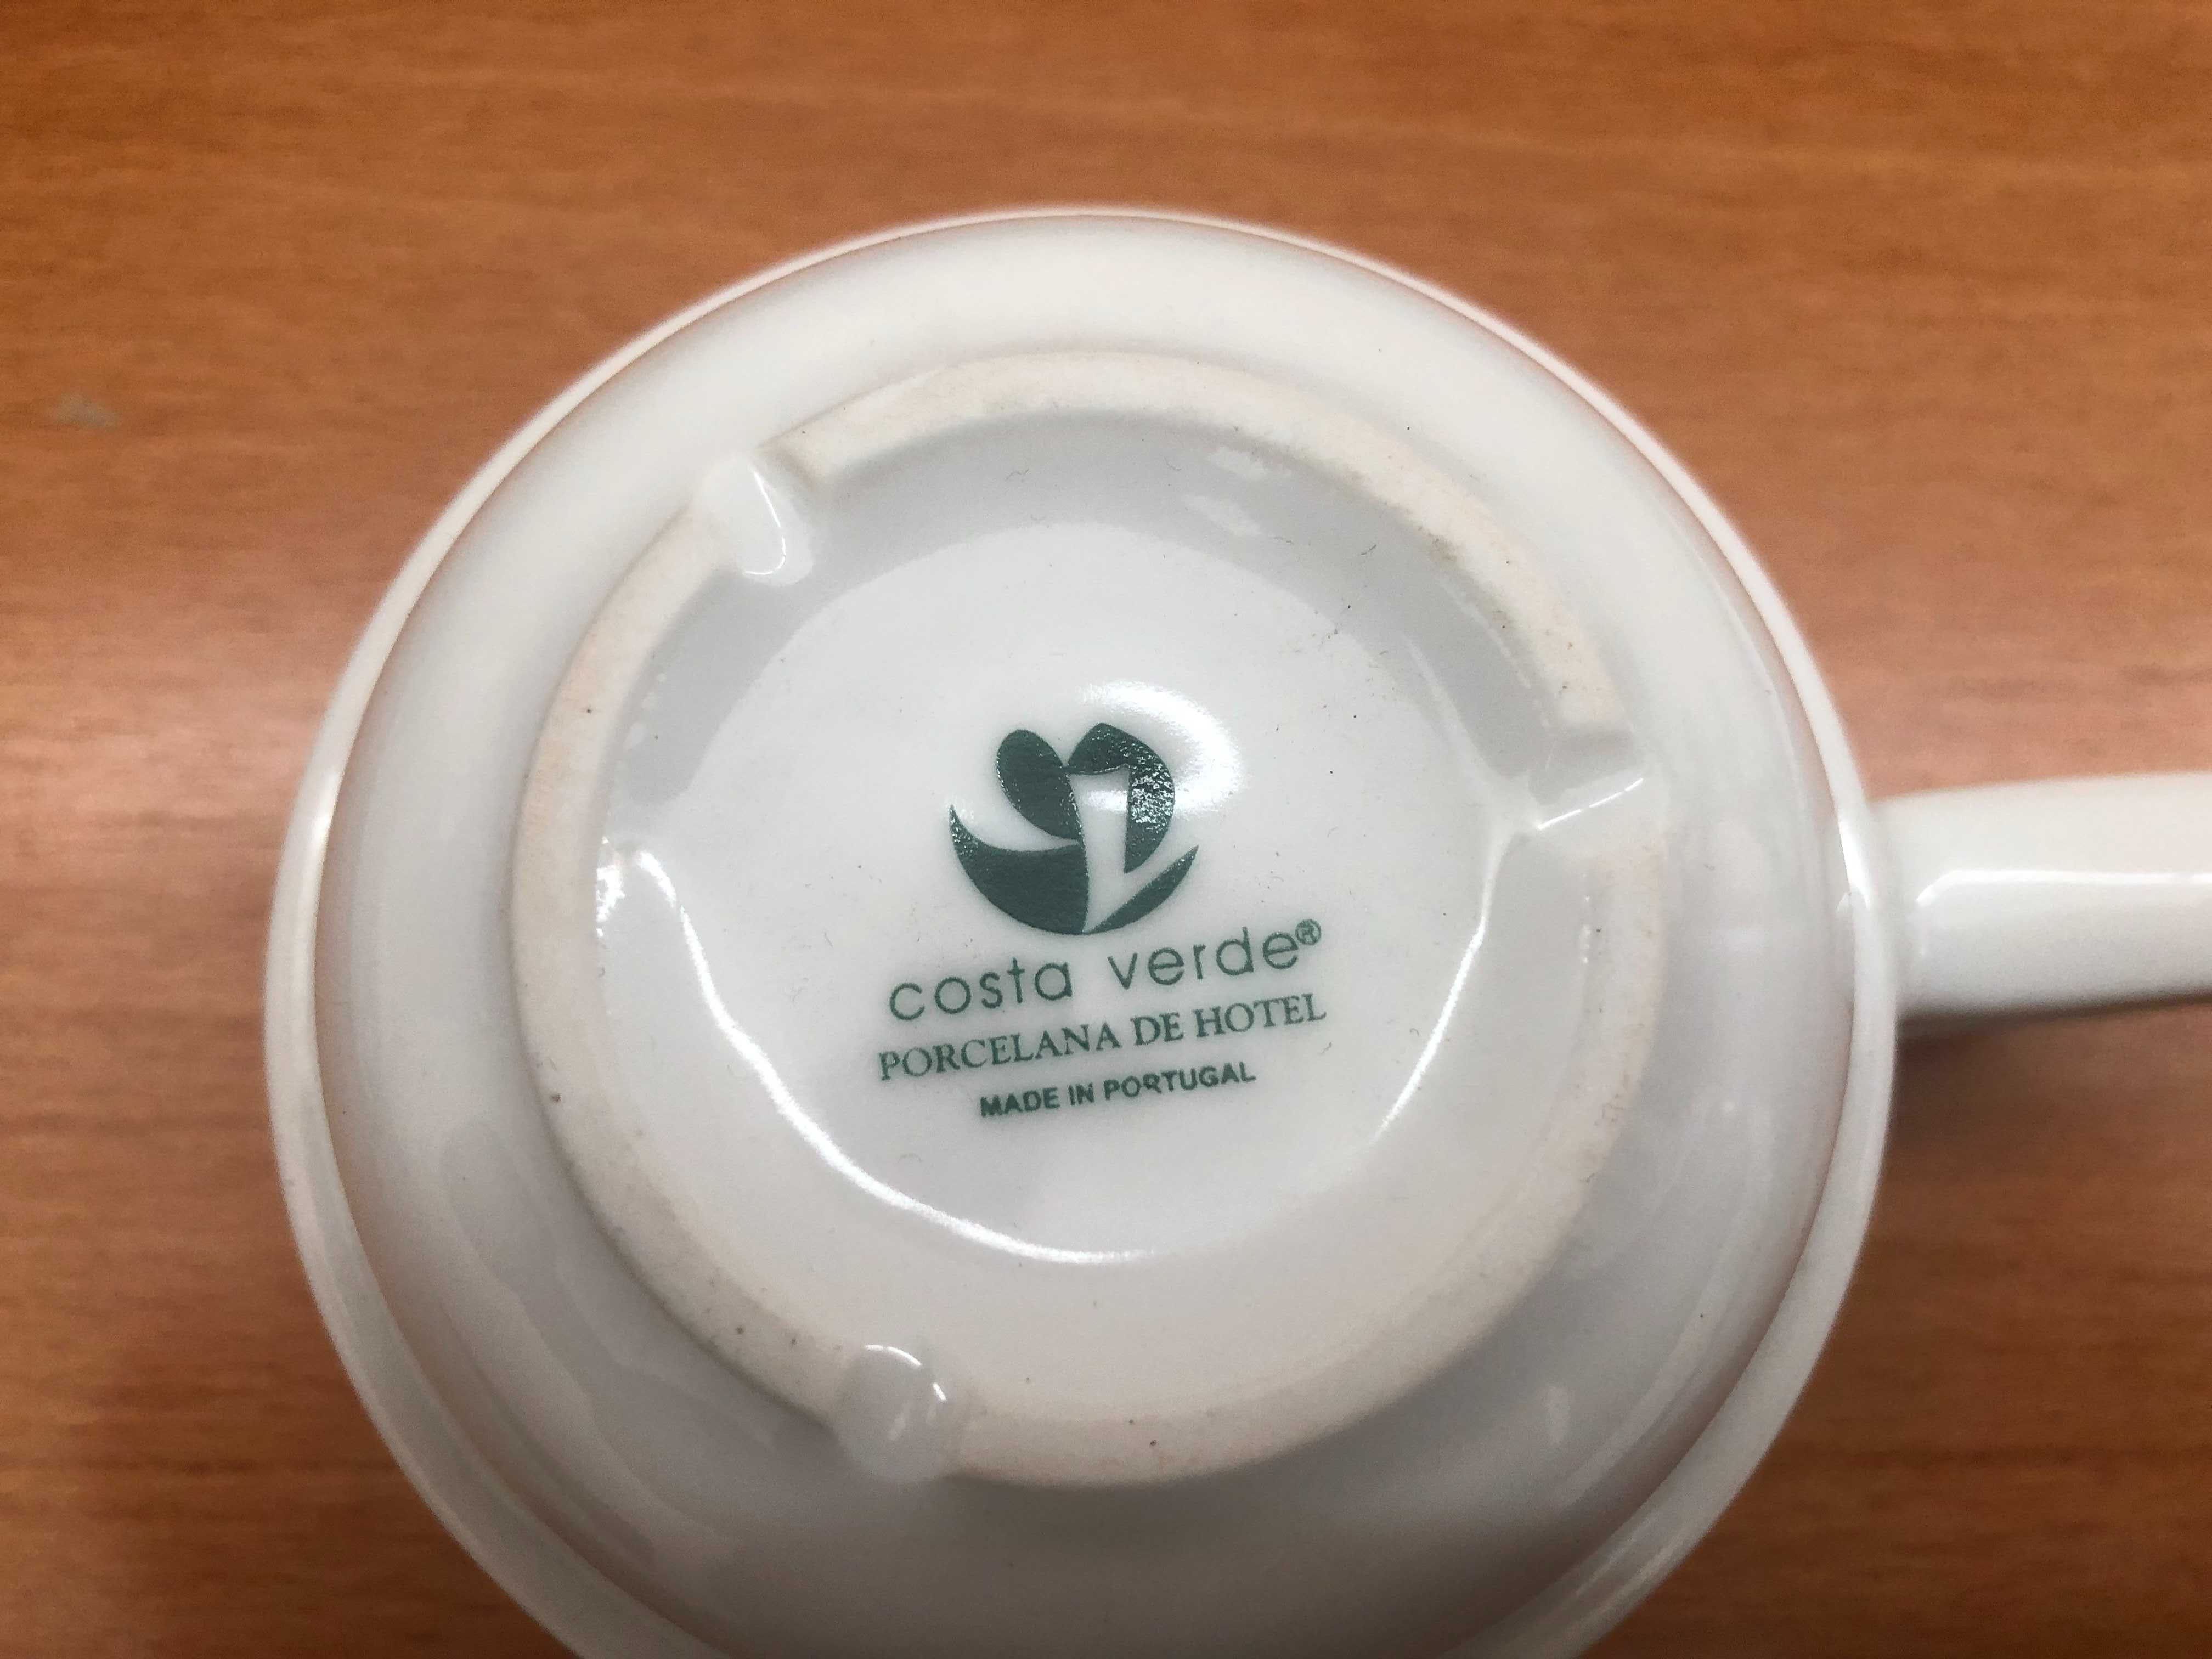 Chávenas de chá Costa verde novas